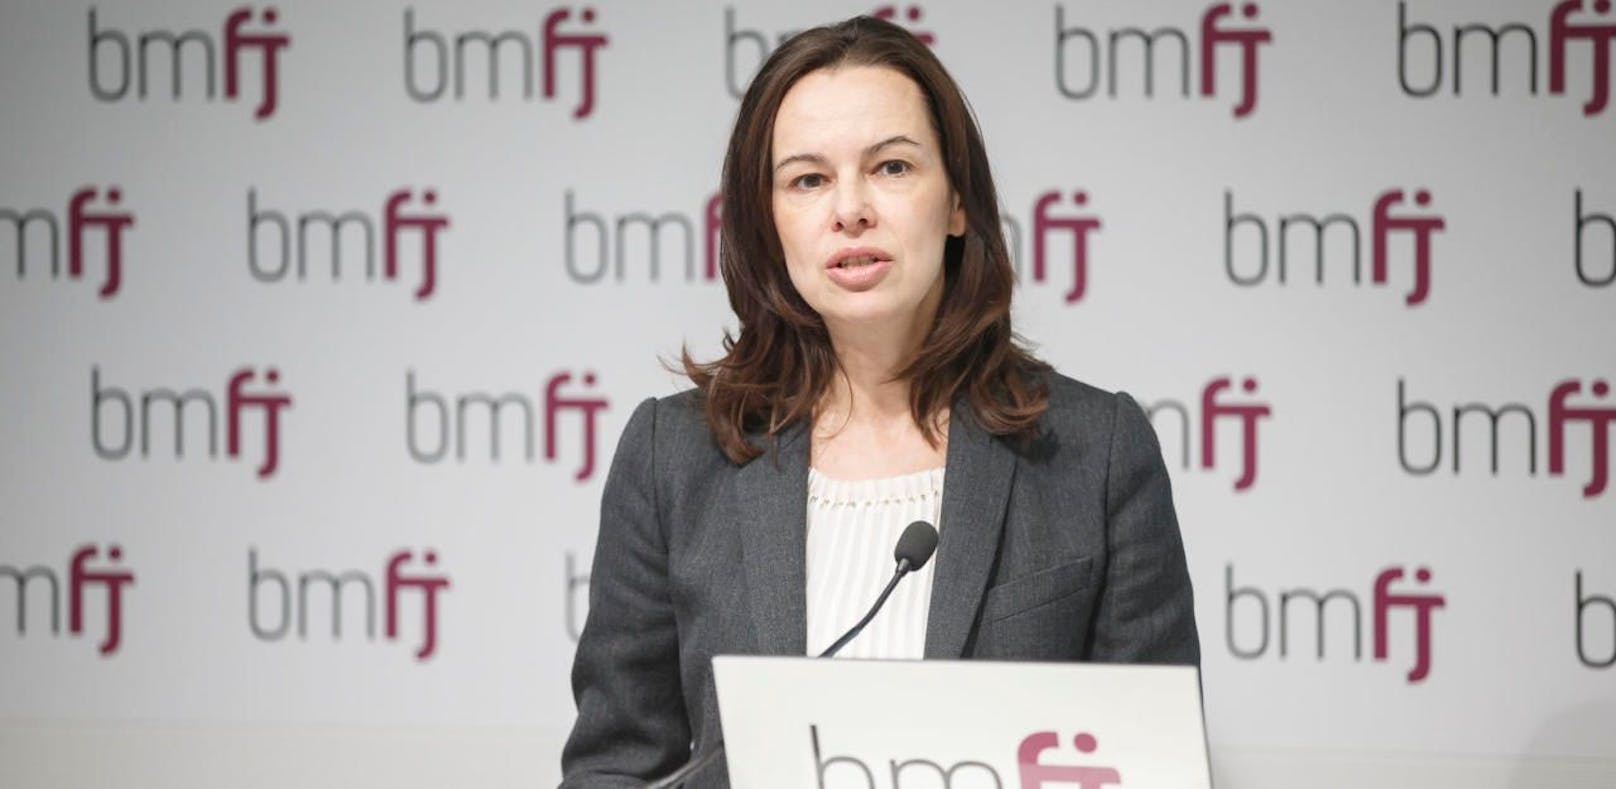 Familien- und Jugendministerin Sophie Karmasin